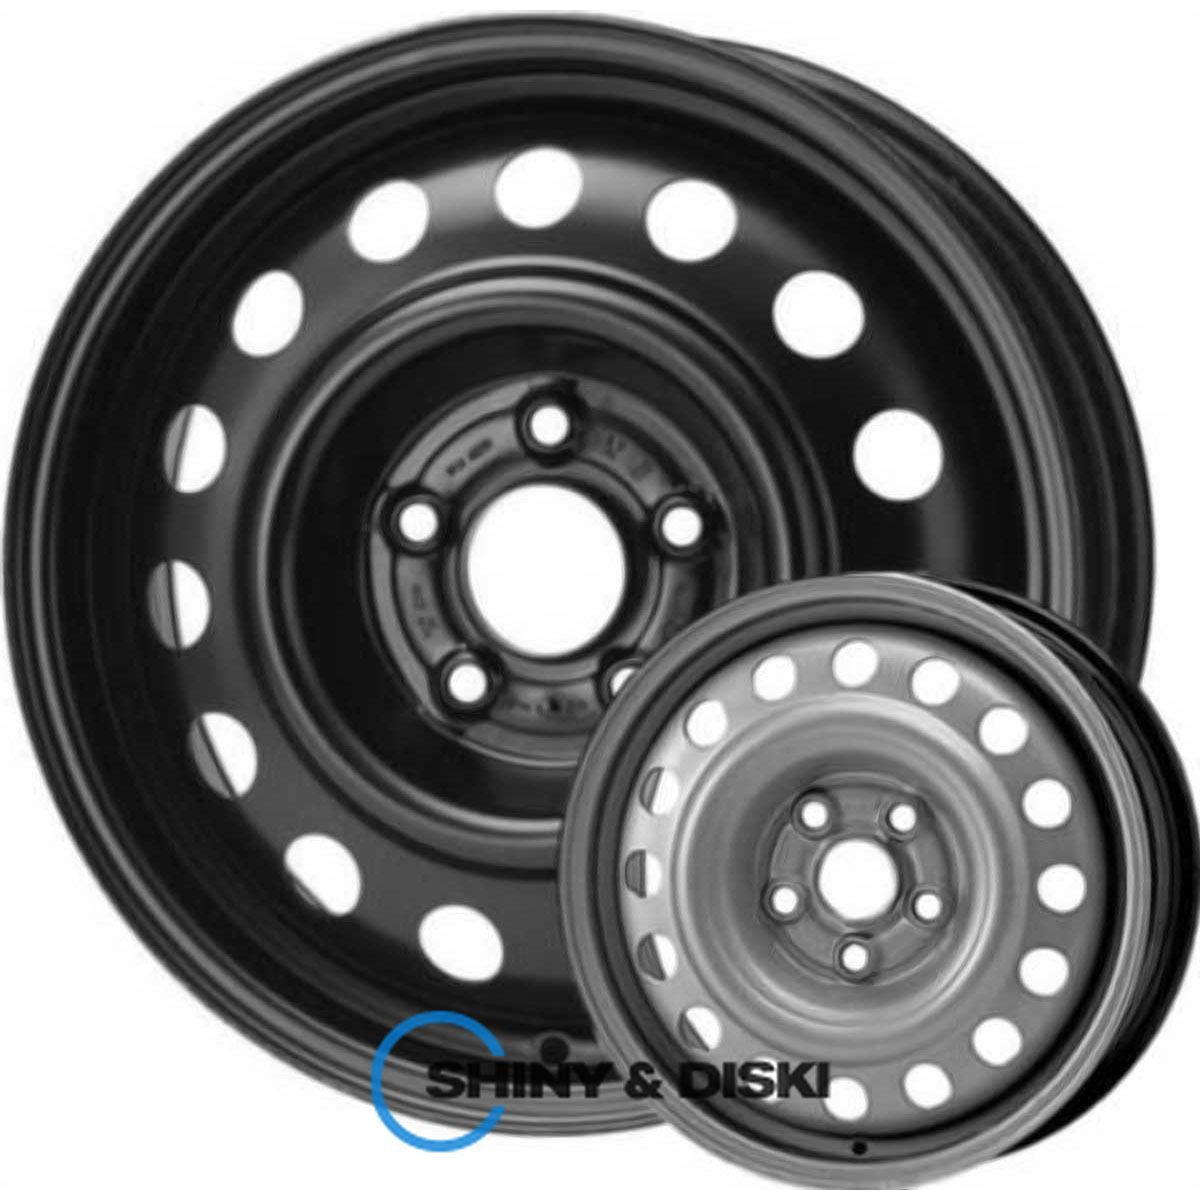 steel wheels kap b r17 w6.5 pcd5x114.3 et40 dia67.1